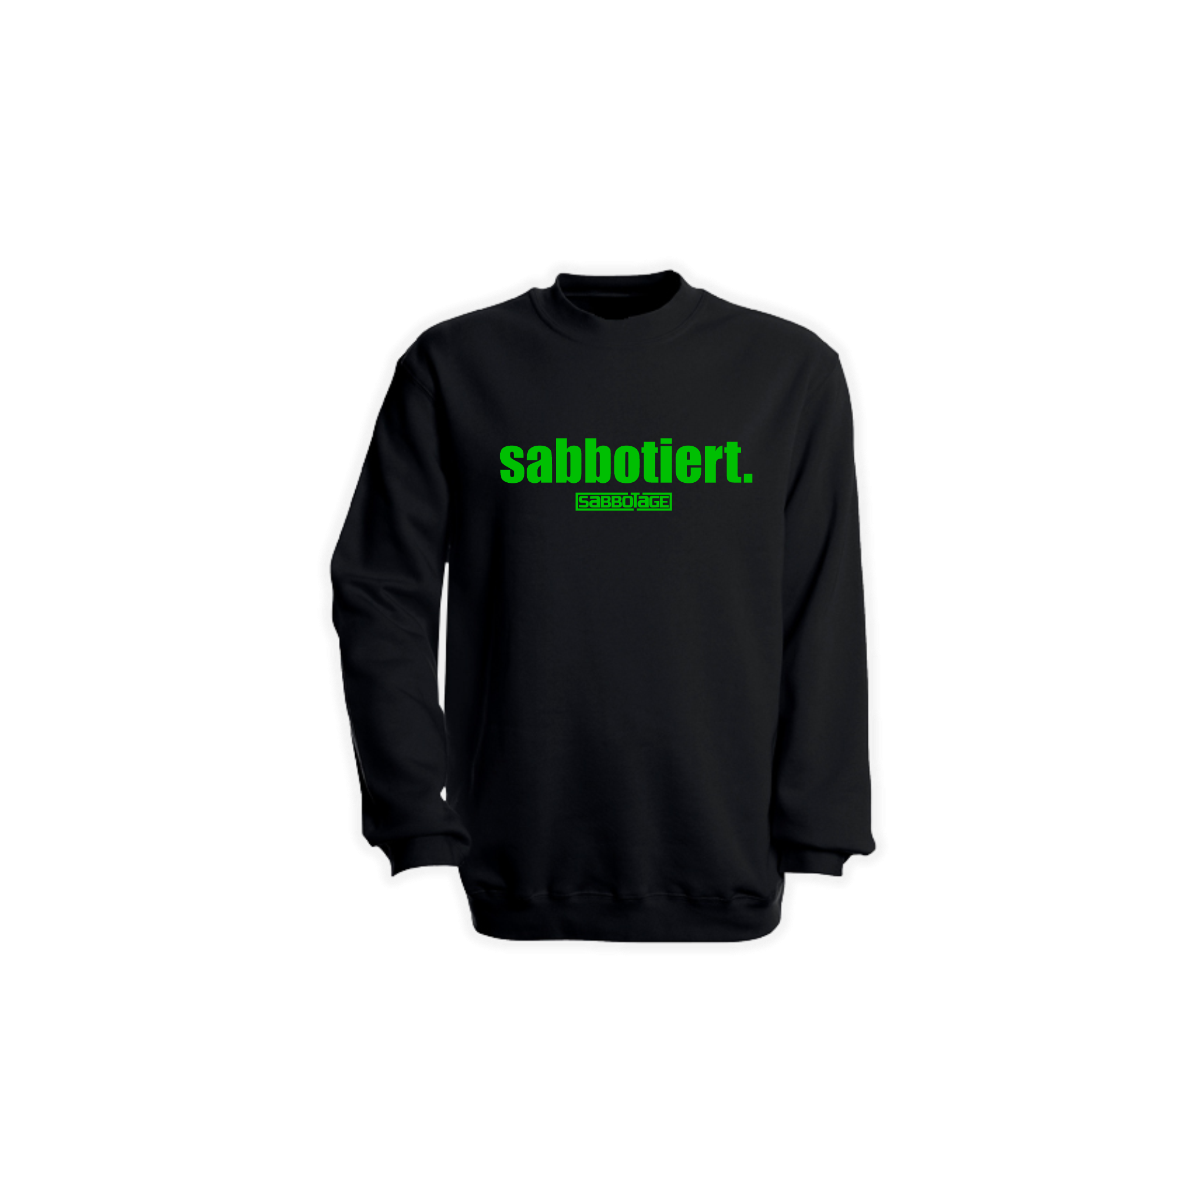 Sweat-Shirt "SABBOTIERT." schwarz